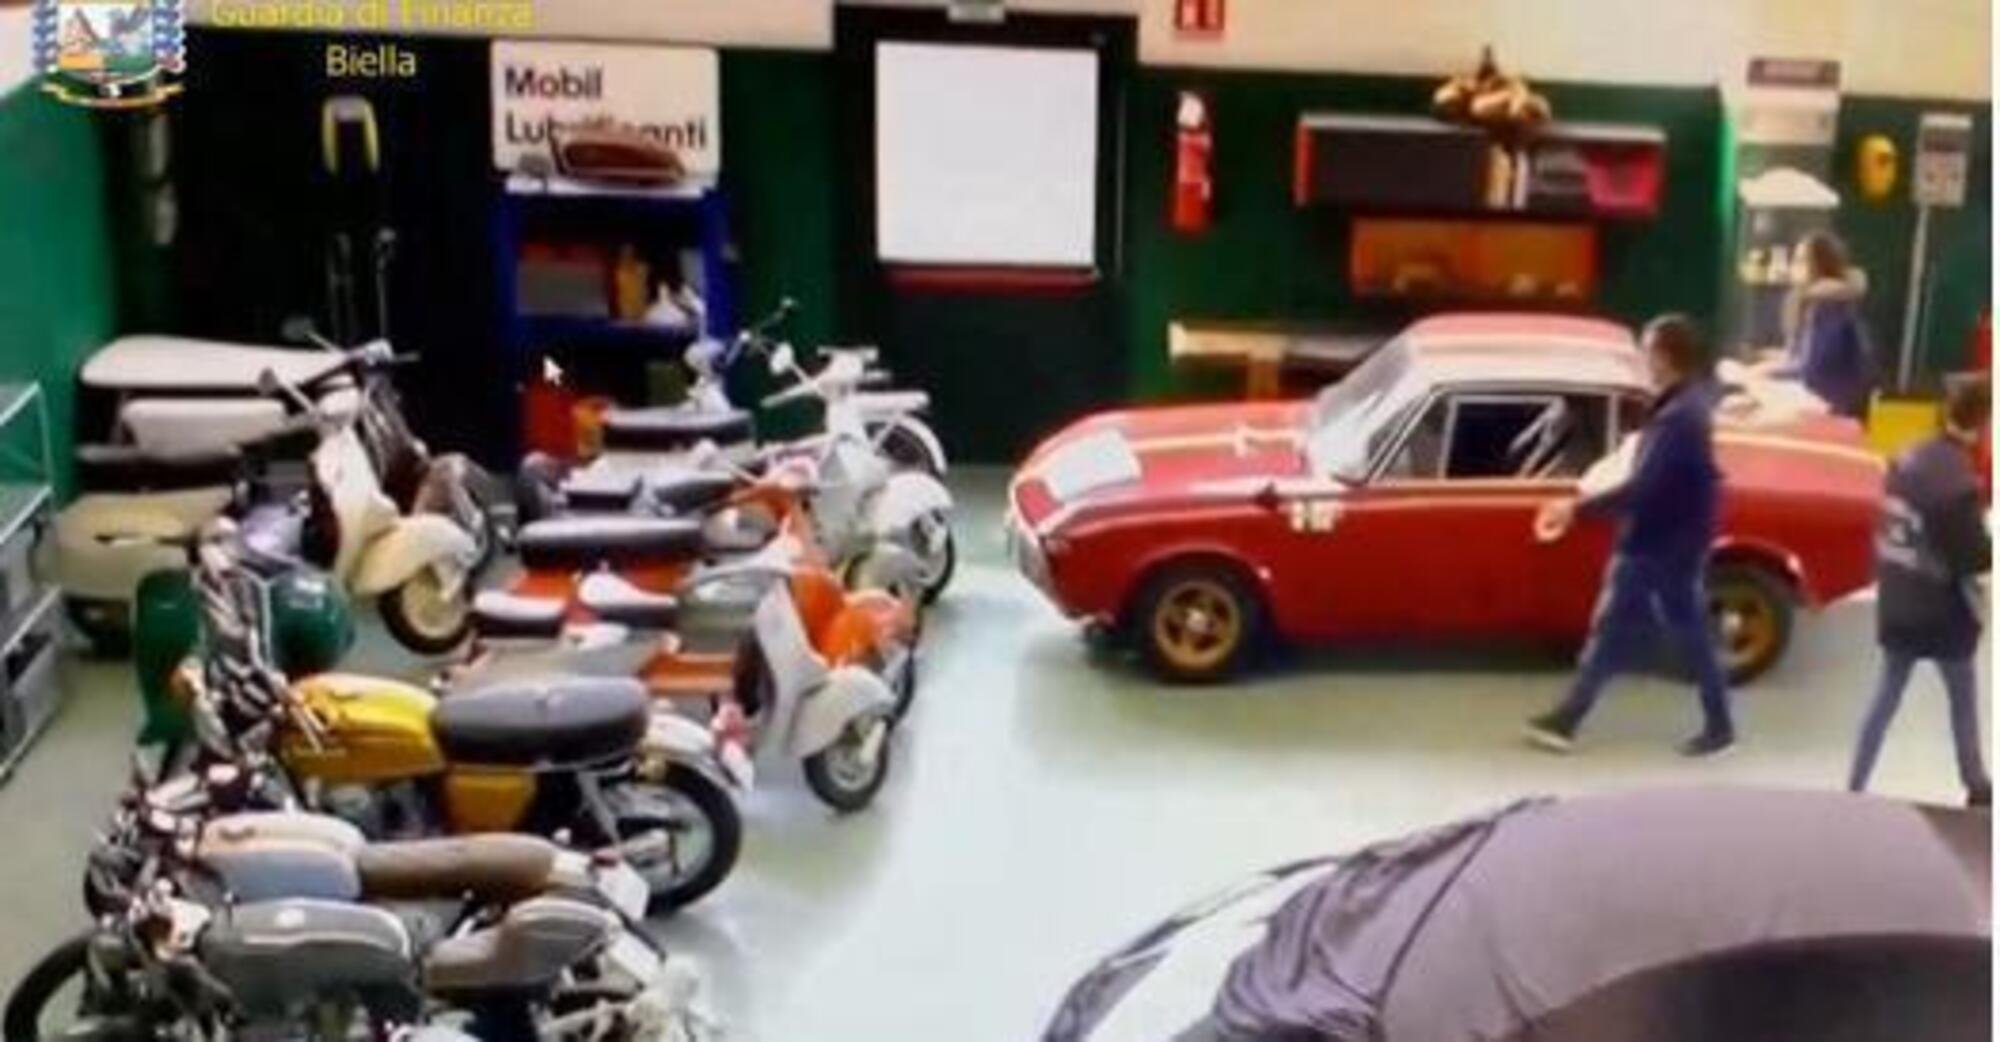 Torino, bancario infedele: sequestrate 37 auto di lusso fra cui la Lancia guidata da Miki Biasion